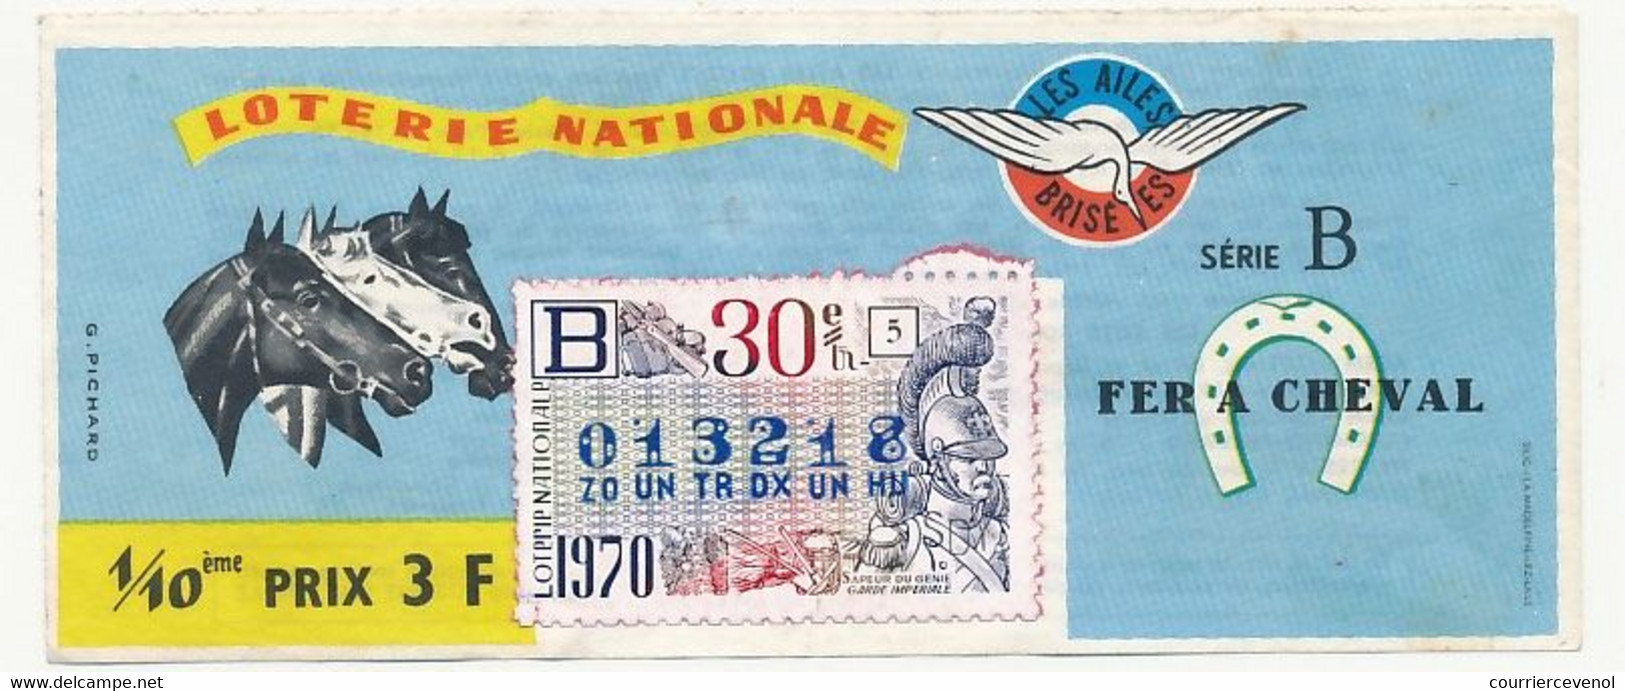 FRANCE - Loterie Nationale - 1/10ème - Les Ailes Brisées - Fer à Cheval  - 30eme Tranche 1970 - Lotterielose